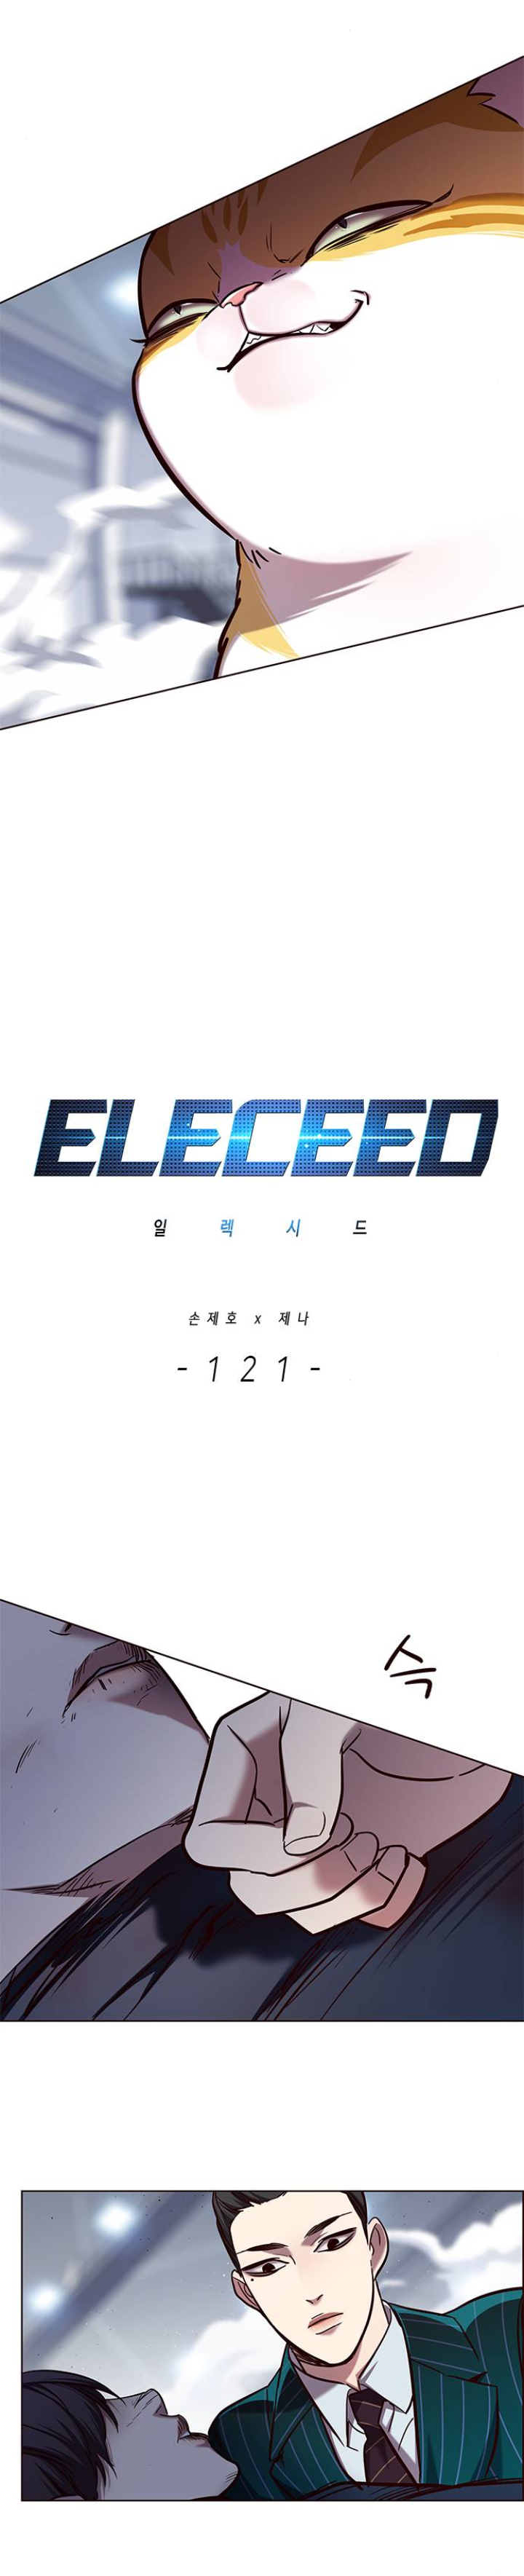 Eleceed121 (4)